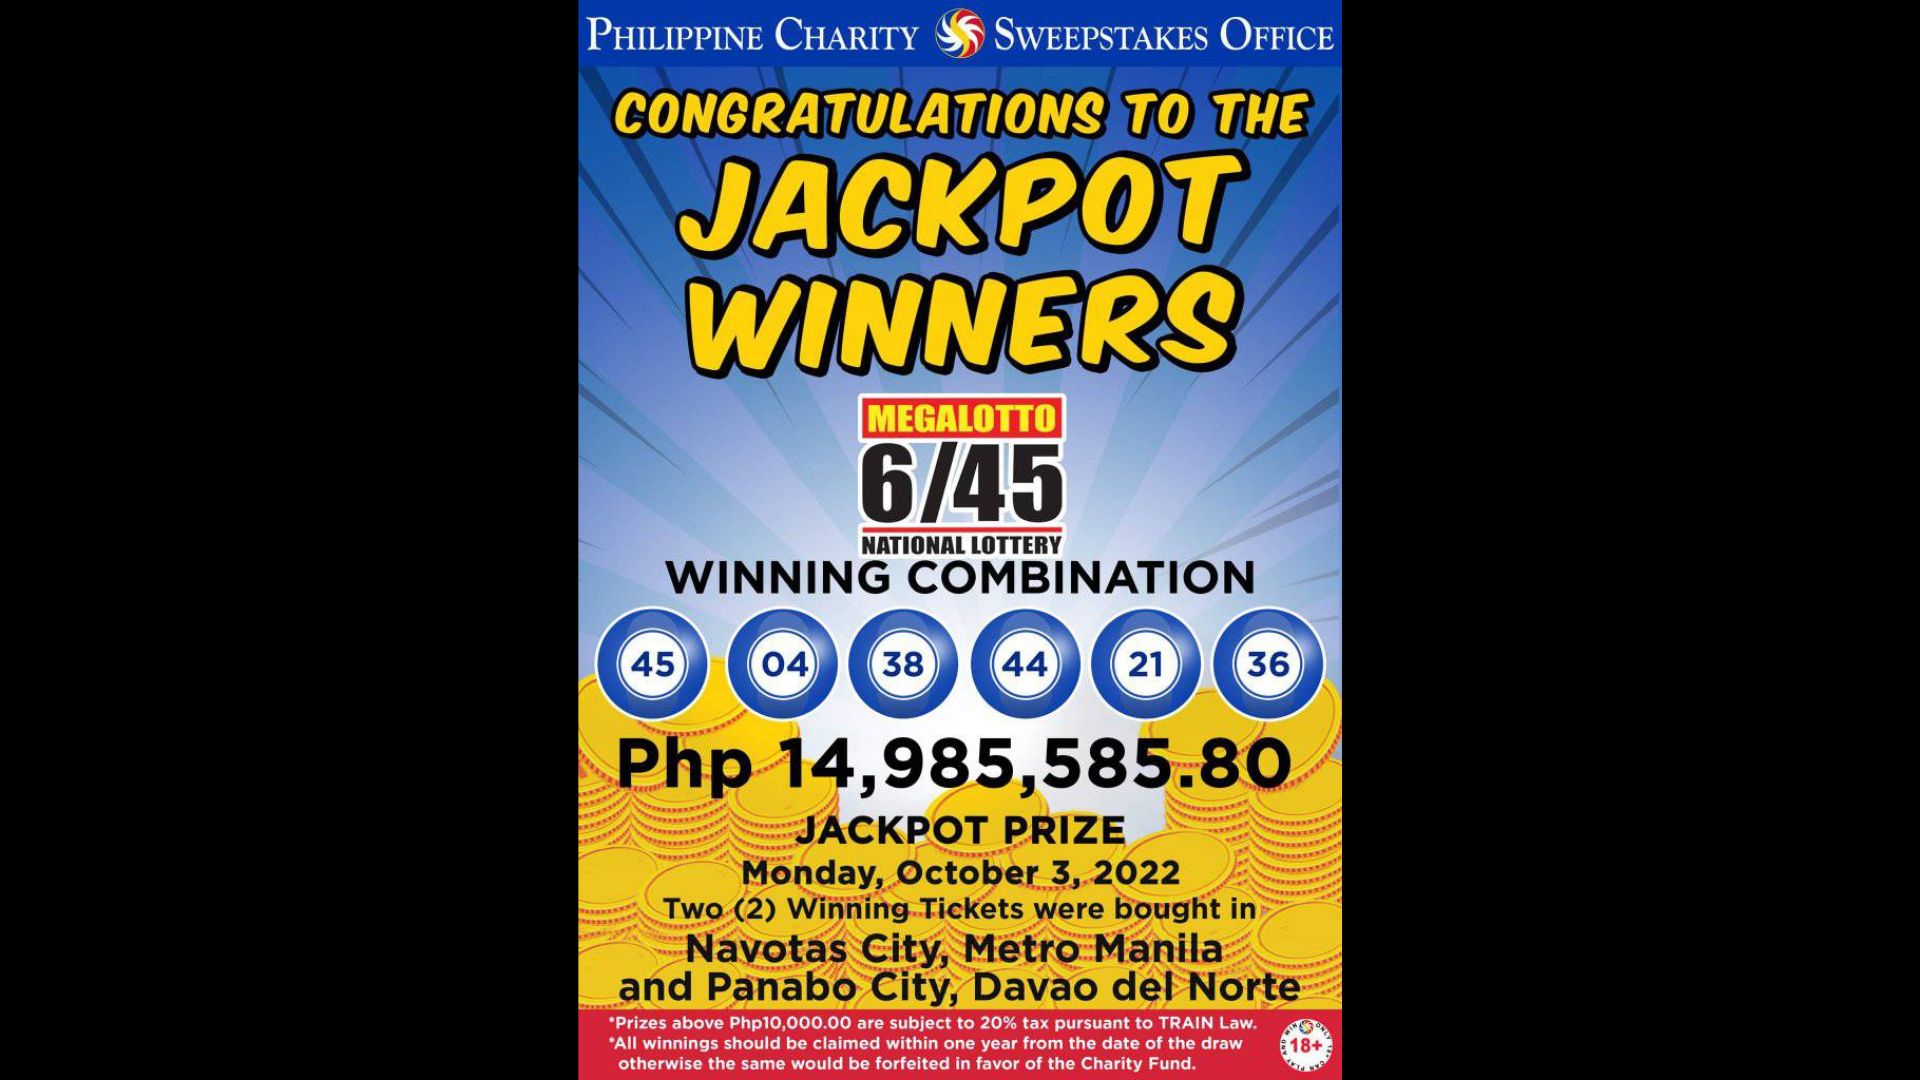 P14.9M na jackpot prize sa Mega Lotto napanalunan ng dalawang mananaya